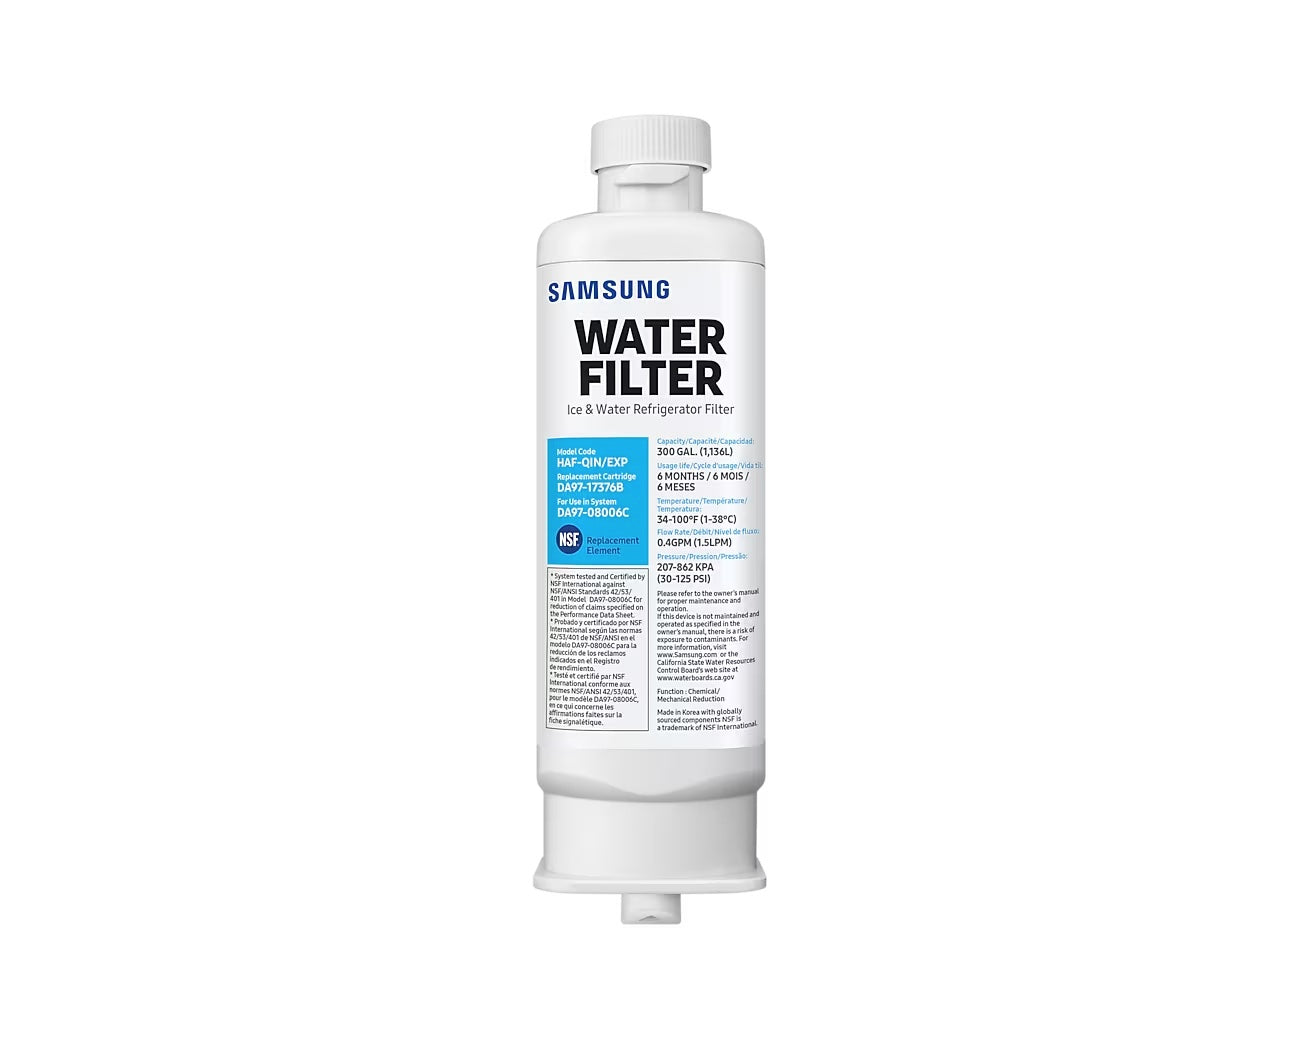 Samsung Water Filter HAF-QIN/EXP